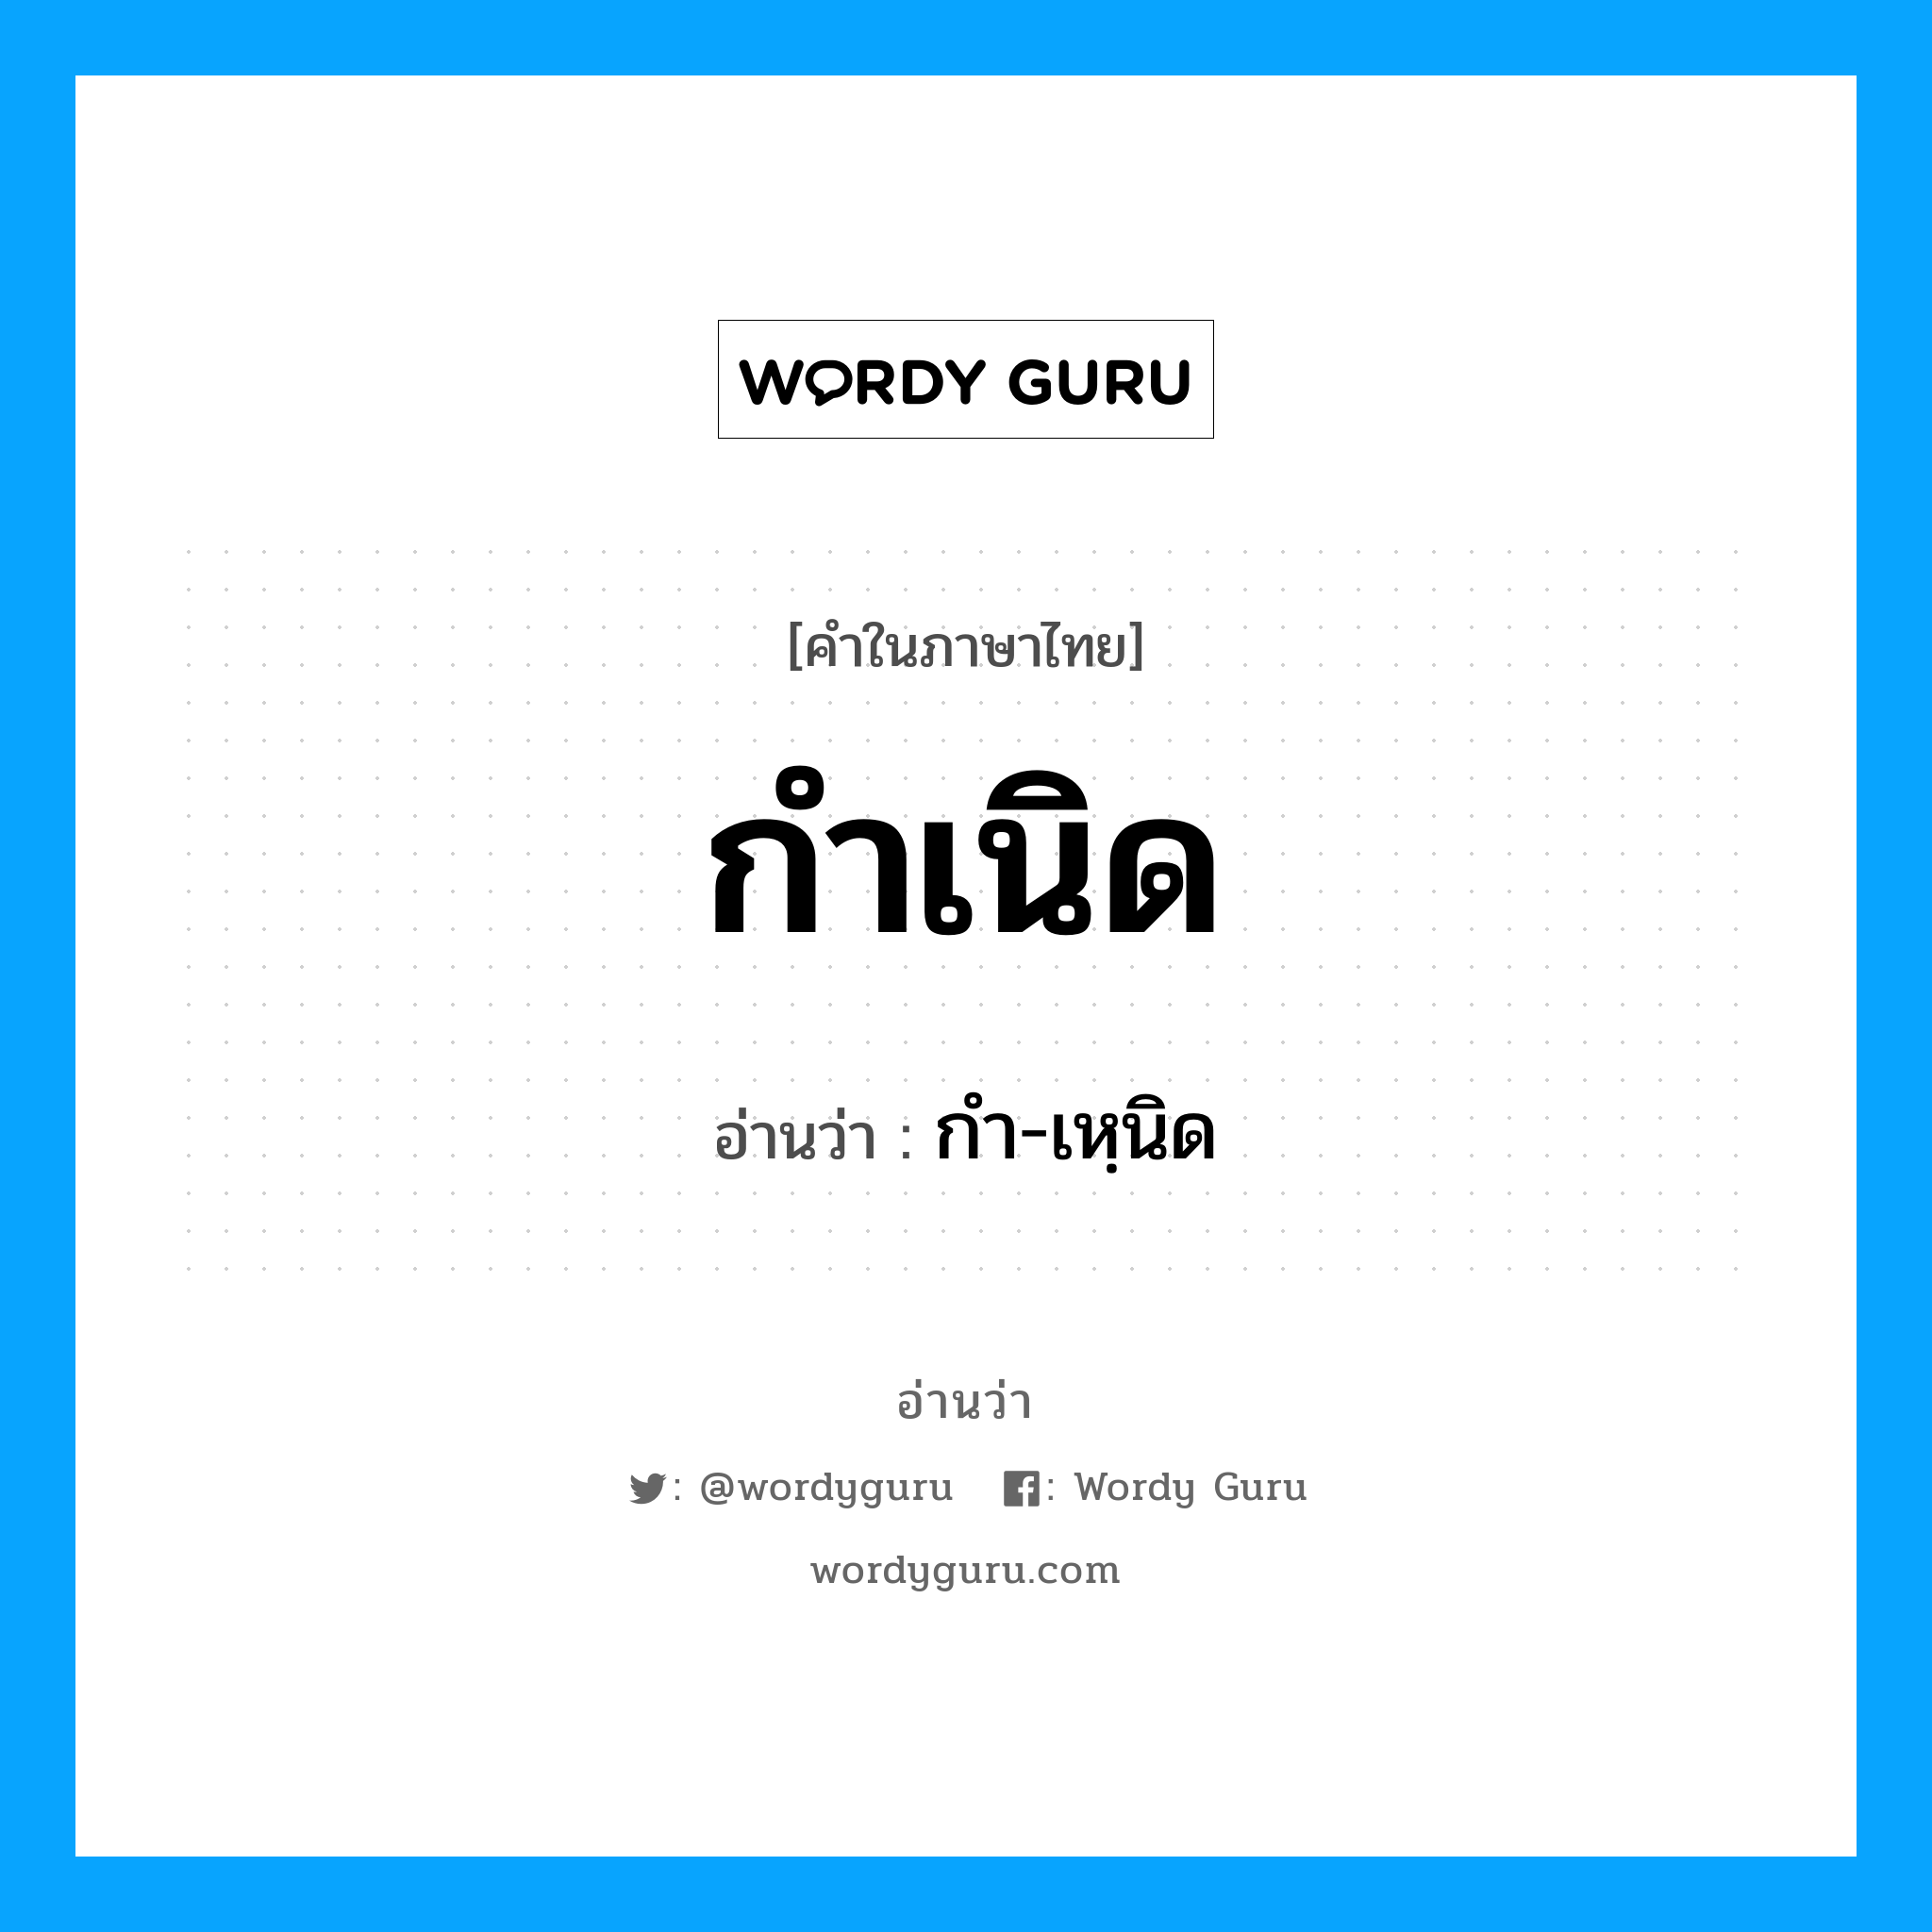 กํา-เหฺนิด เป็นคำอ่านของคำไหน?, คำในภาษาไทย กํา-เหฺนิด อ่านว่า กำเนิด